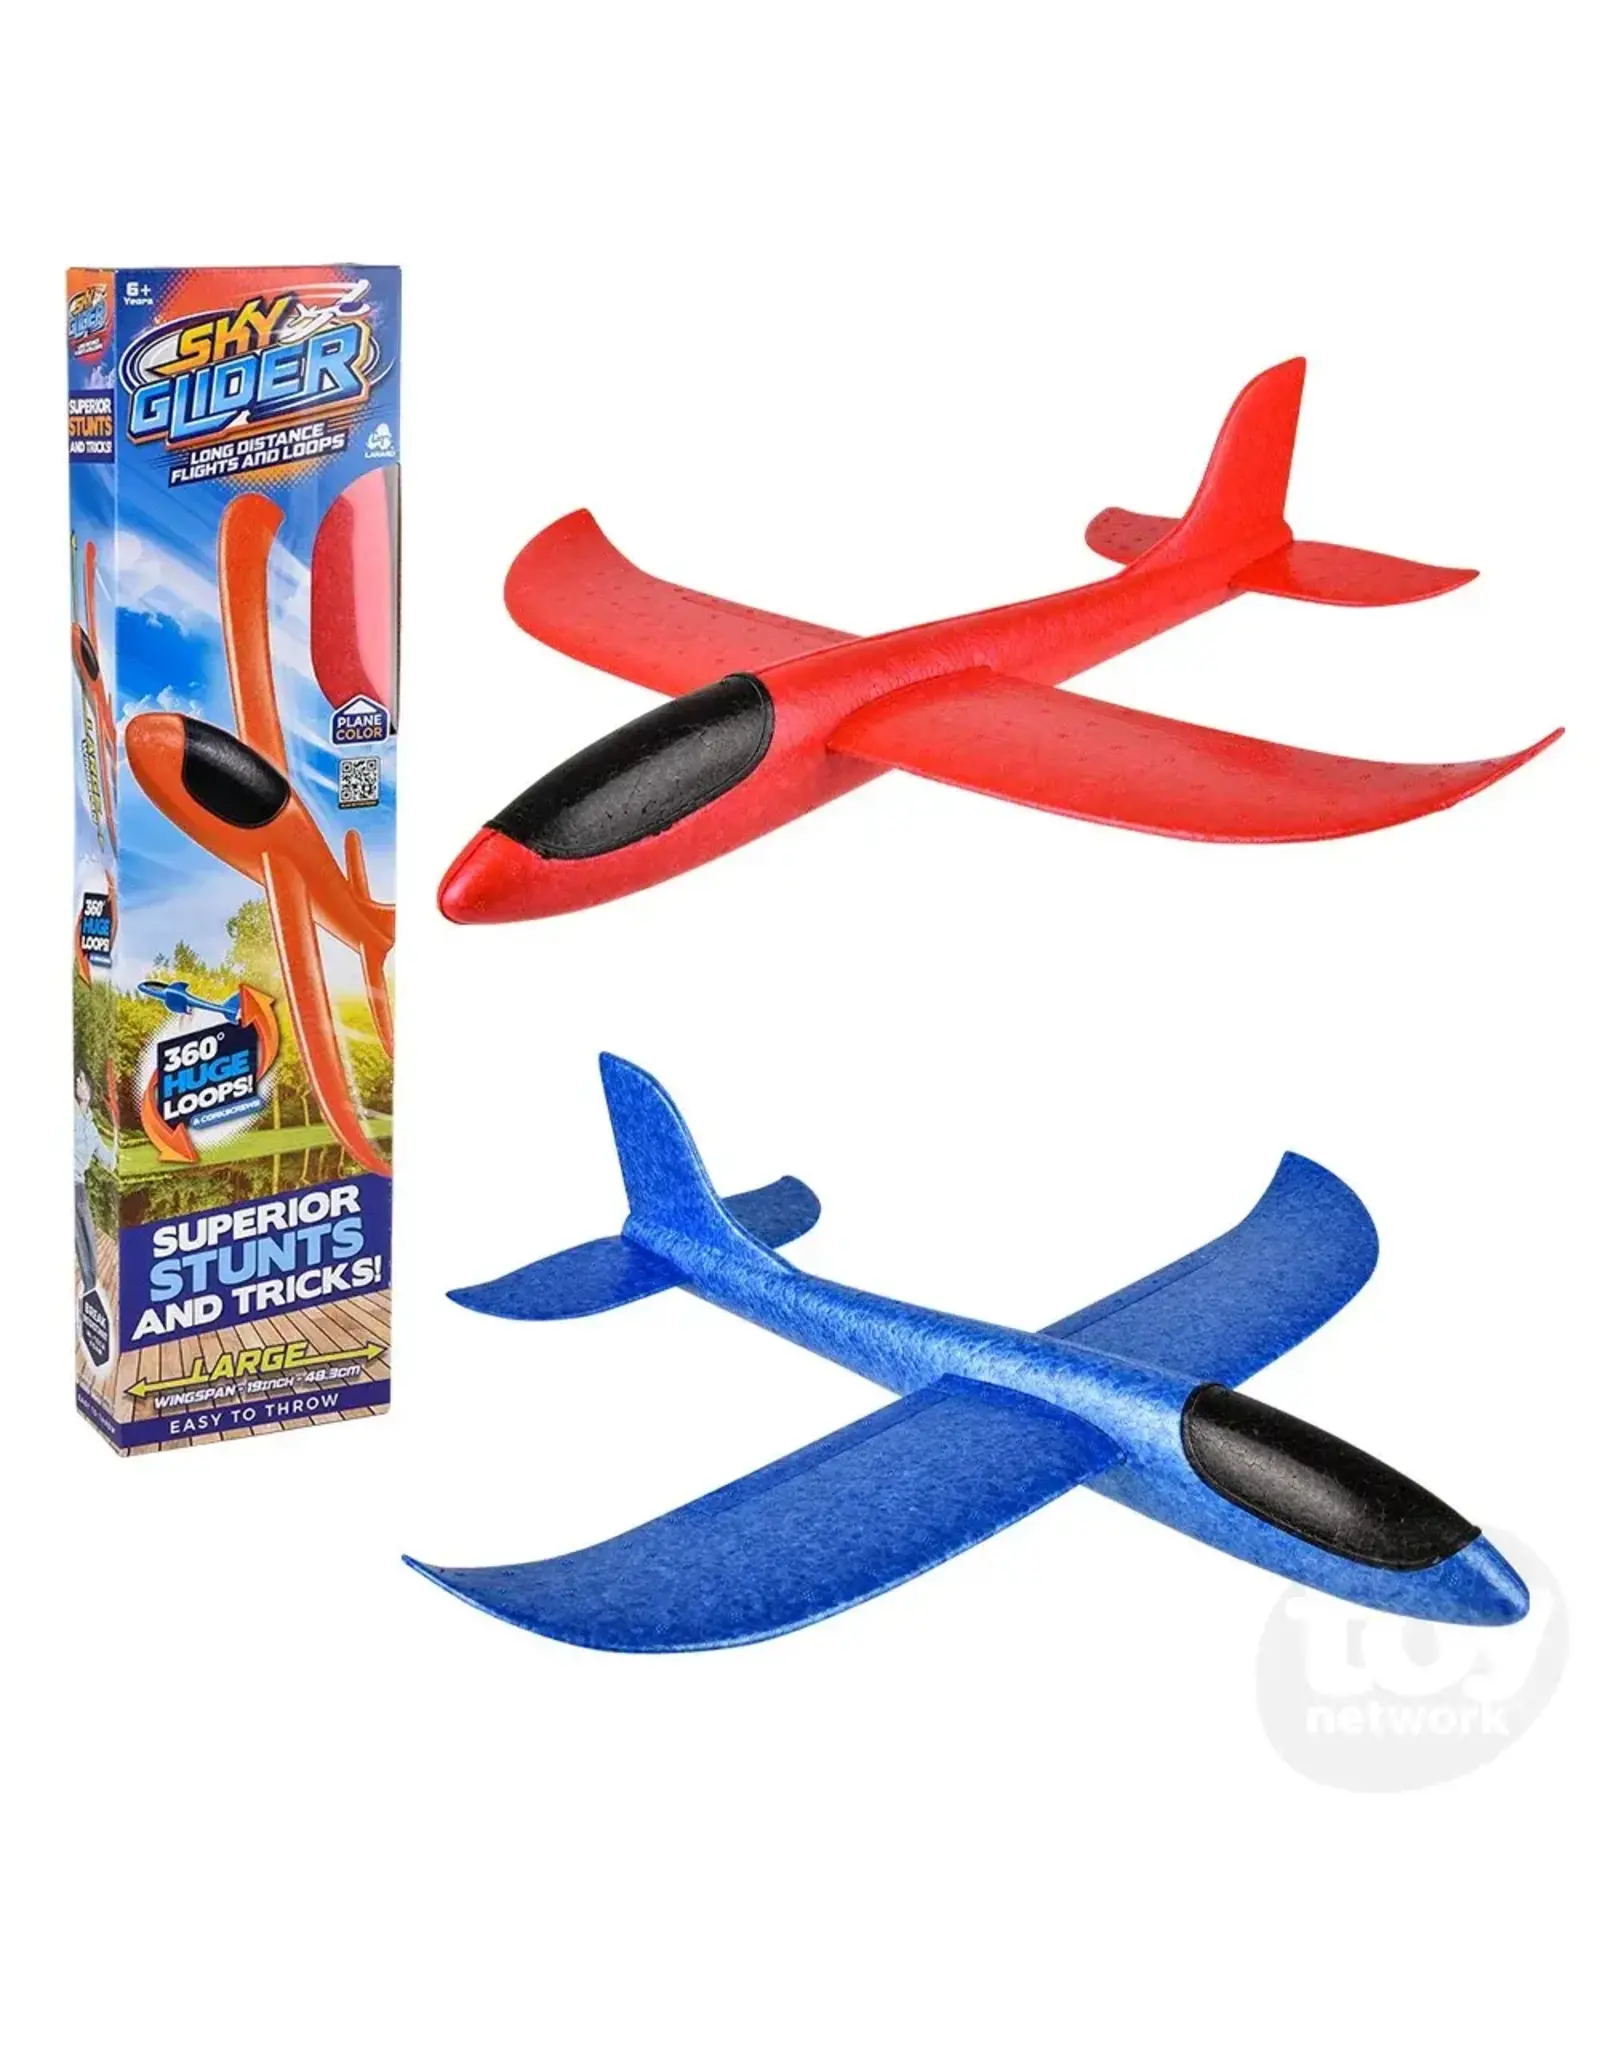 The Toy Network Lanard Stunt Flyer Sky Glider